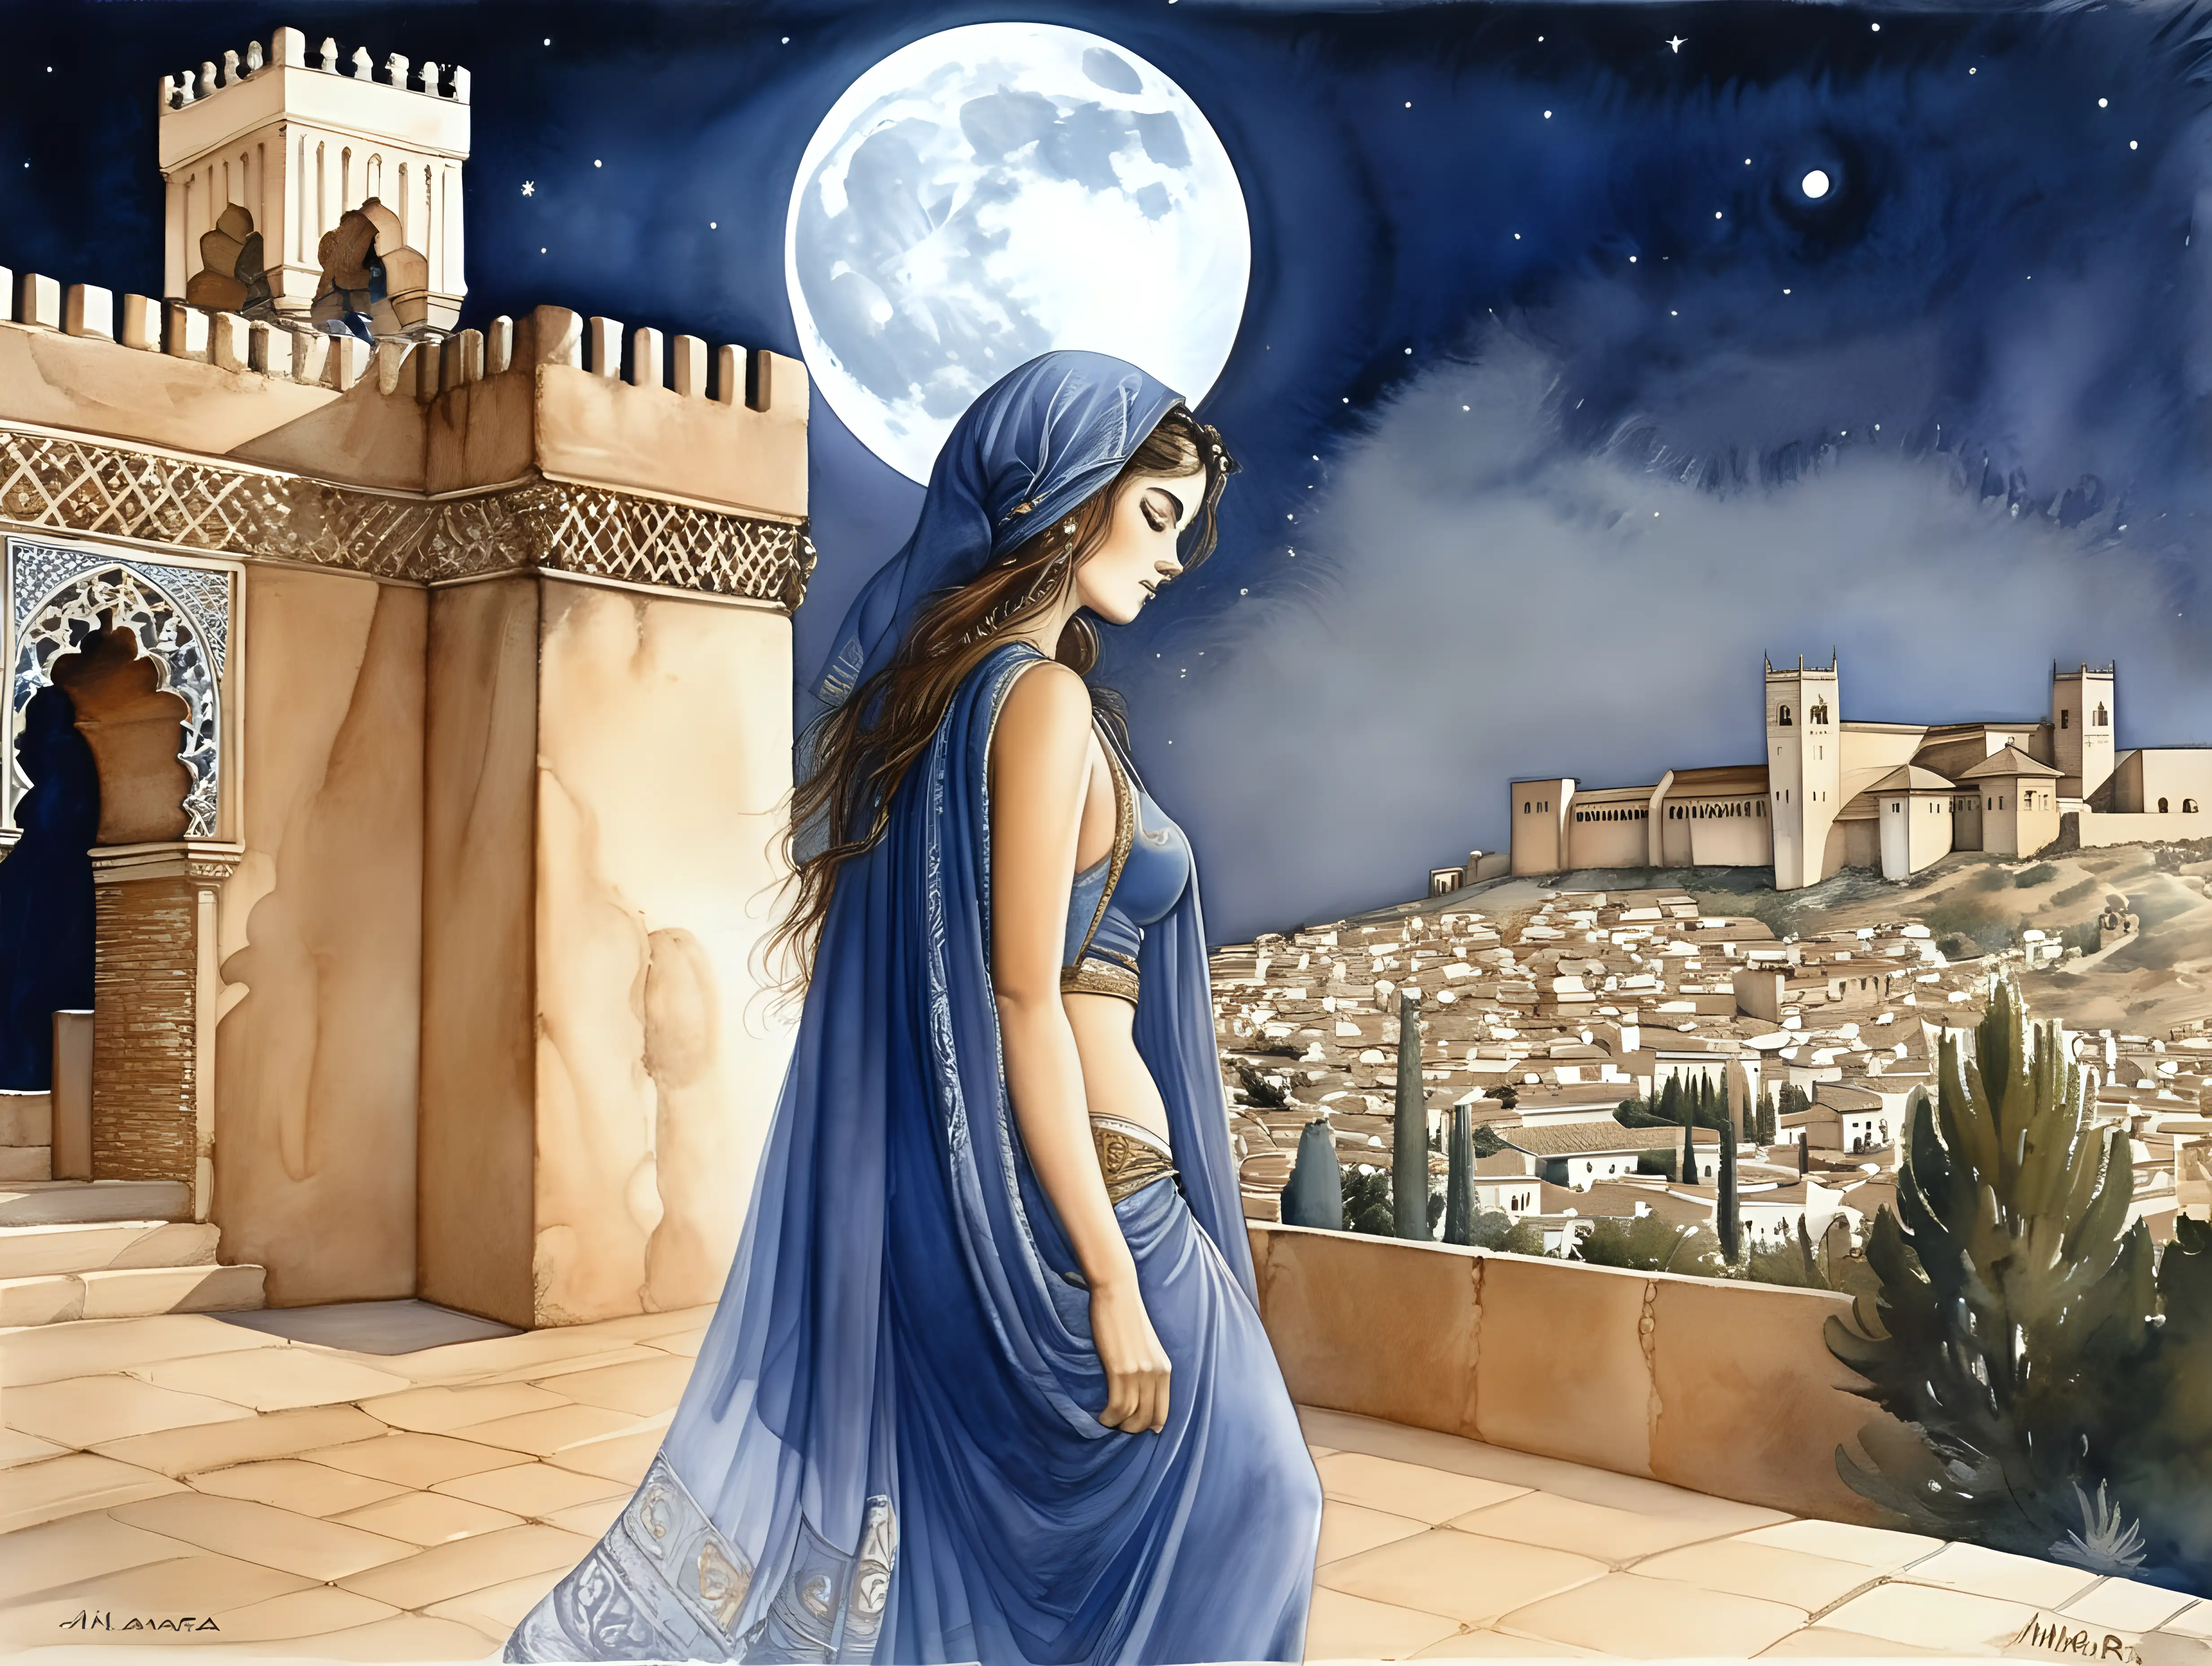 Arab Woman at Night in Alhambra Milo Manara Watercolor